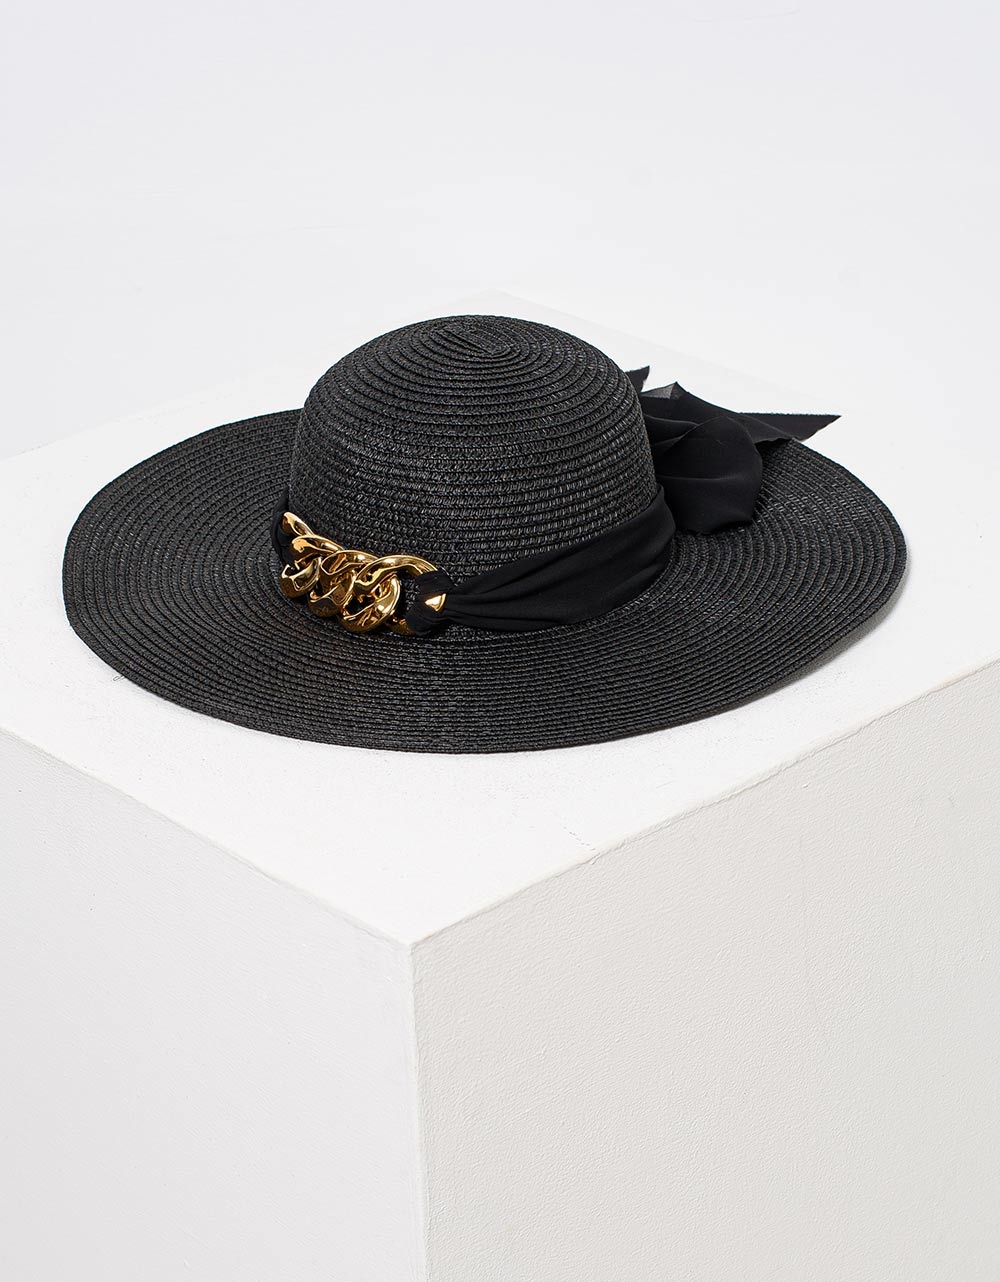 Εικόνα από Γυναικεία καπέλα με μεταλλικές λεπτομέρειες και κορδέλα Μαύρο